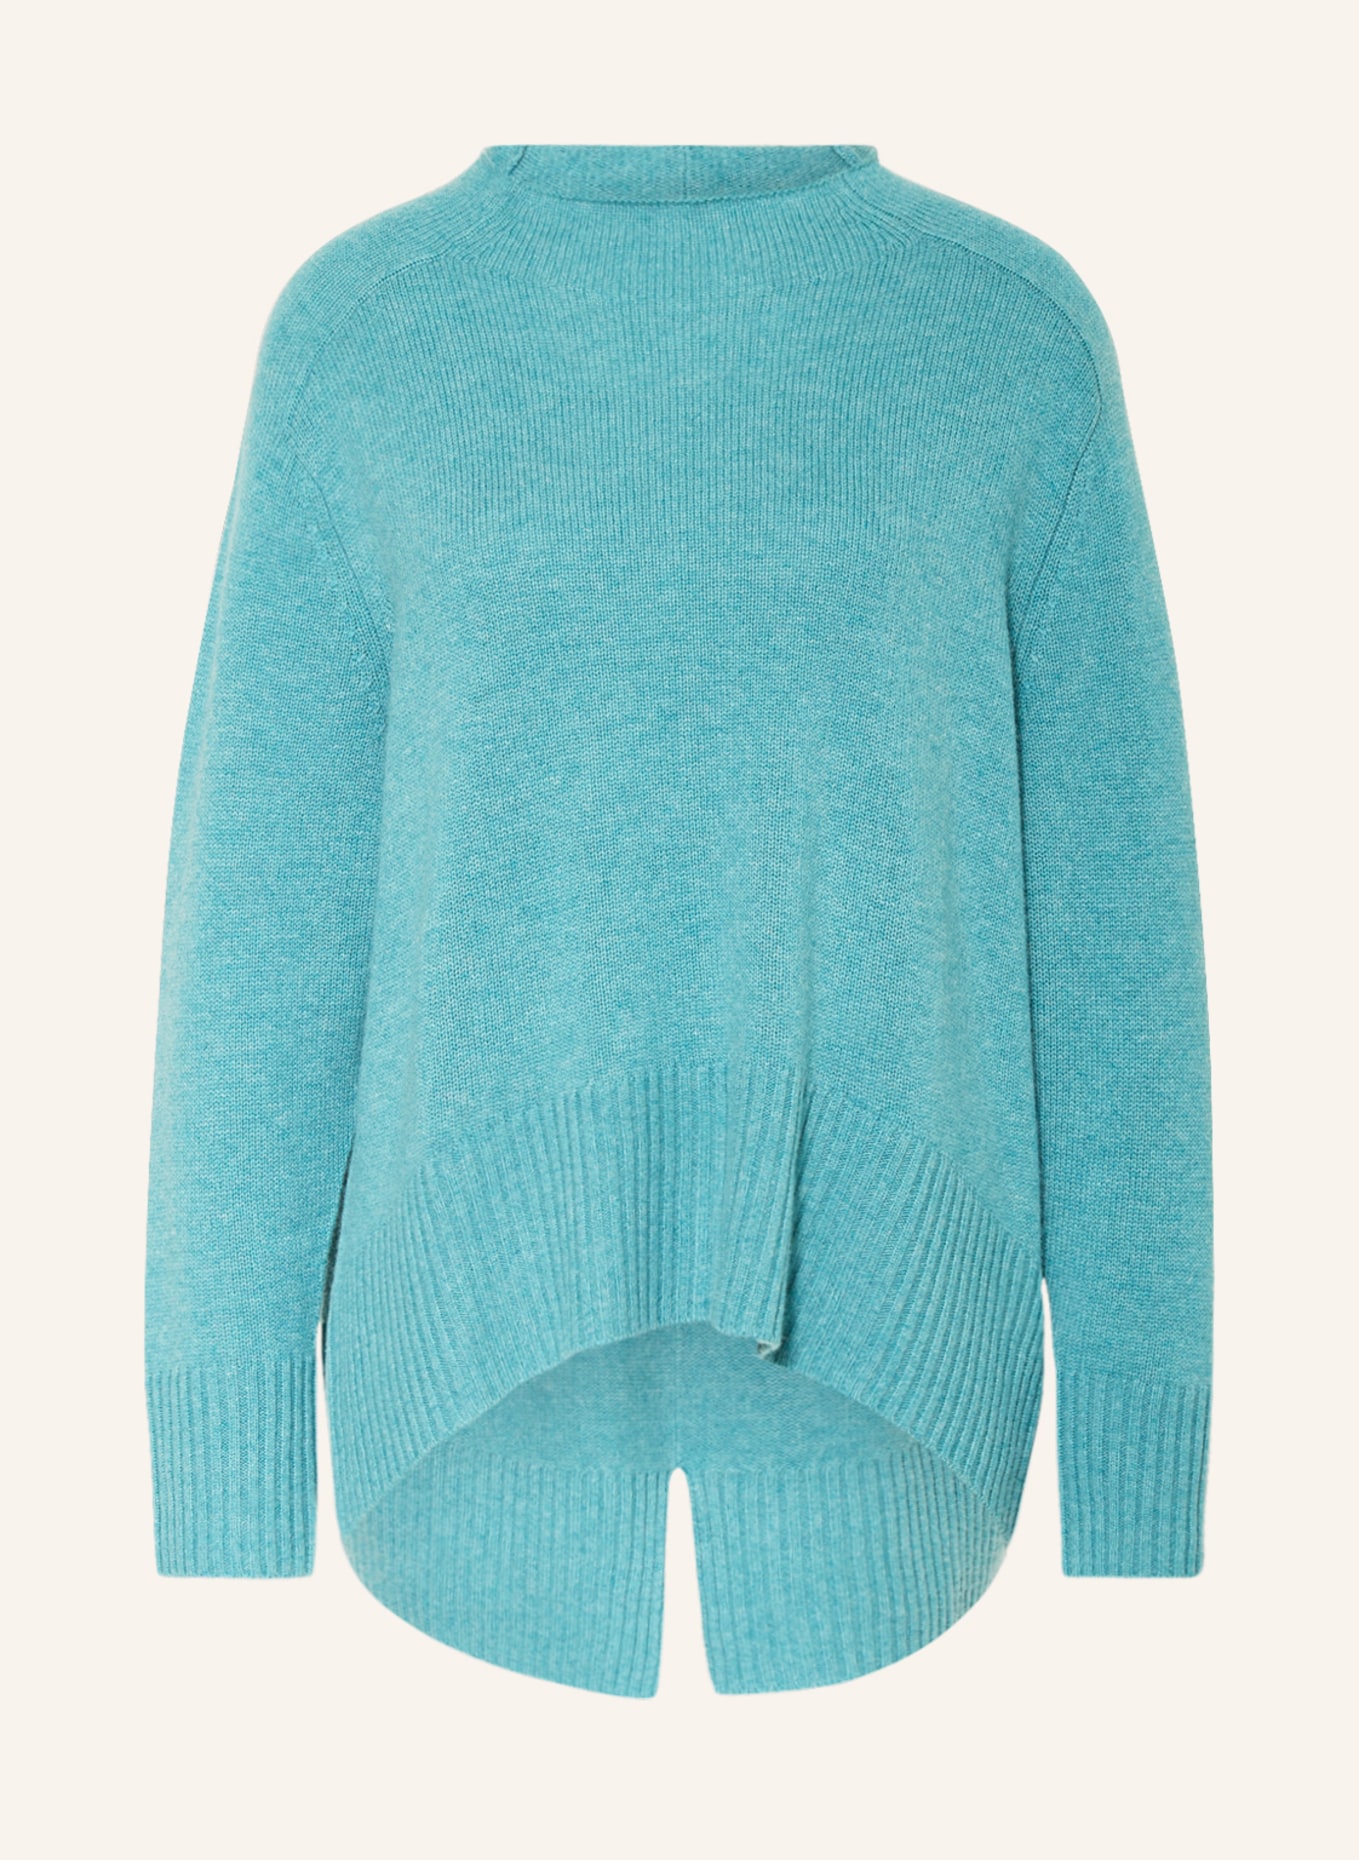 MRS & HUGS Pullover mit Cashmere, Farbe: TÜRKIS (Bild 1)